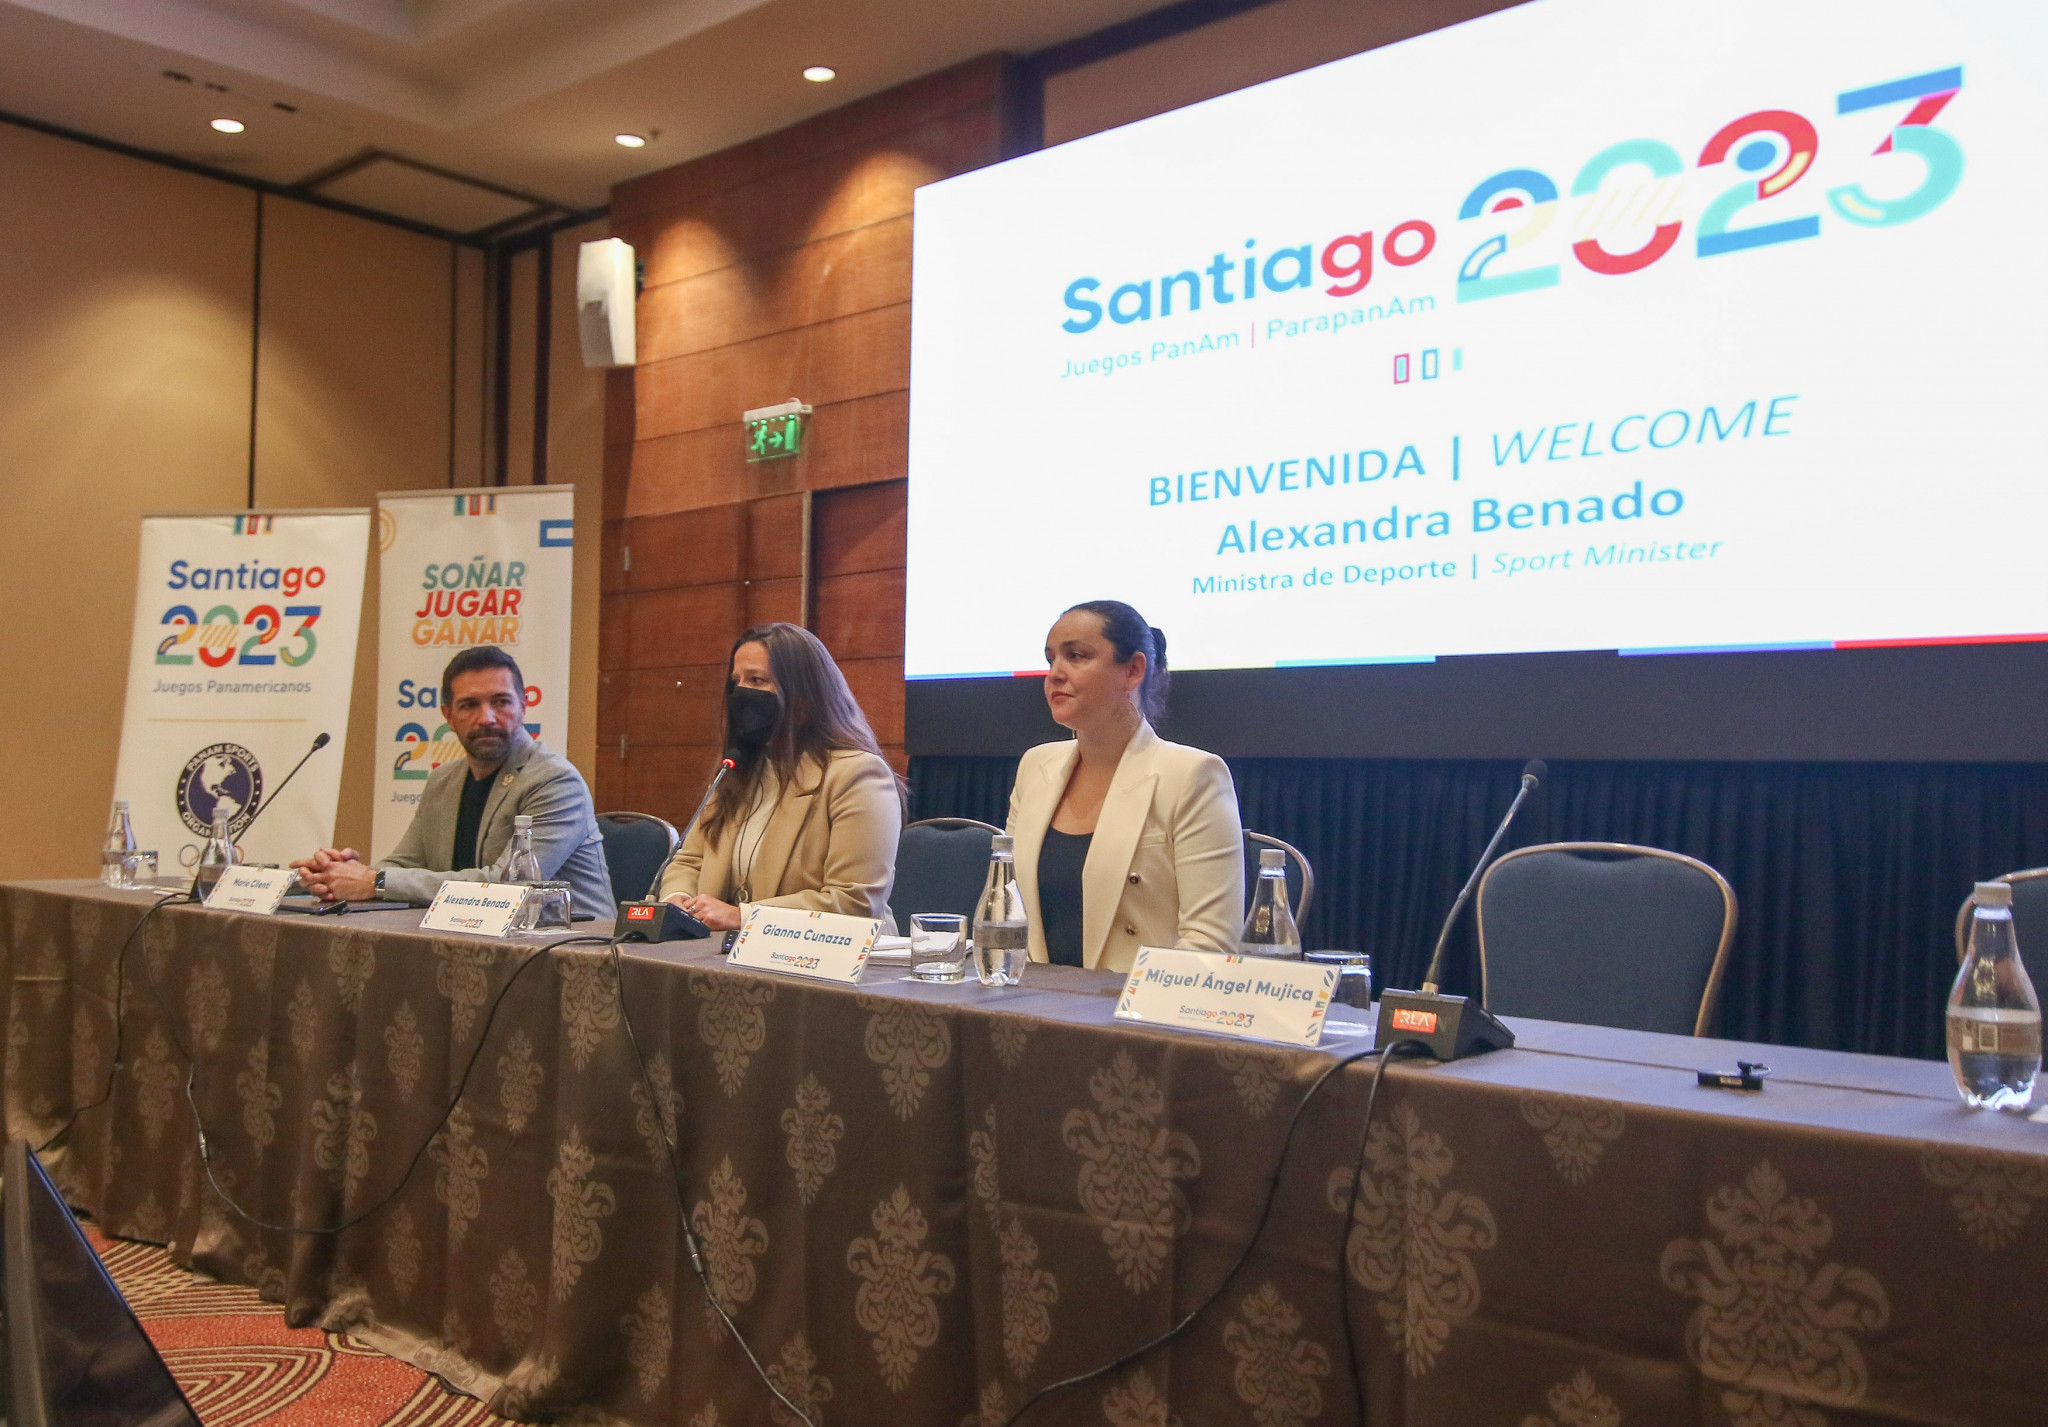 NOCs inspect Santiago 2023 venues, lodging and transportation